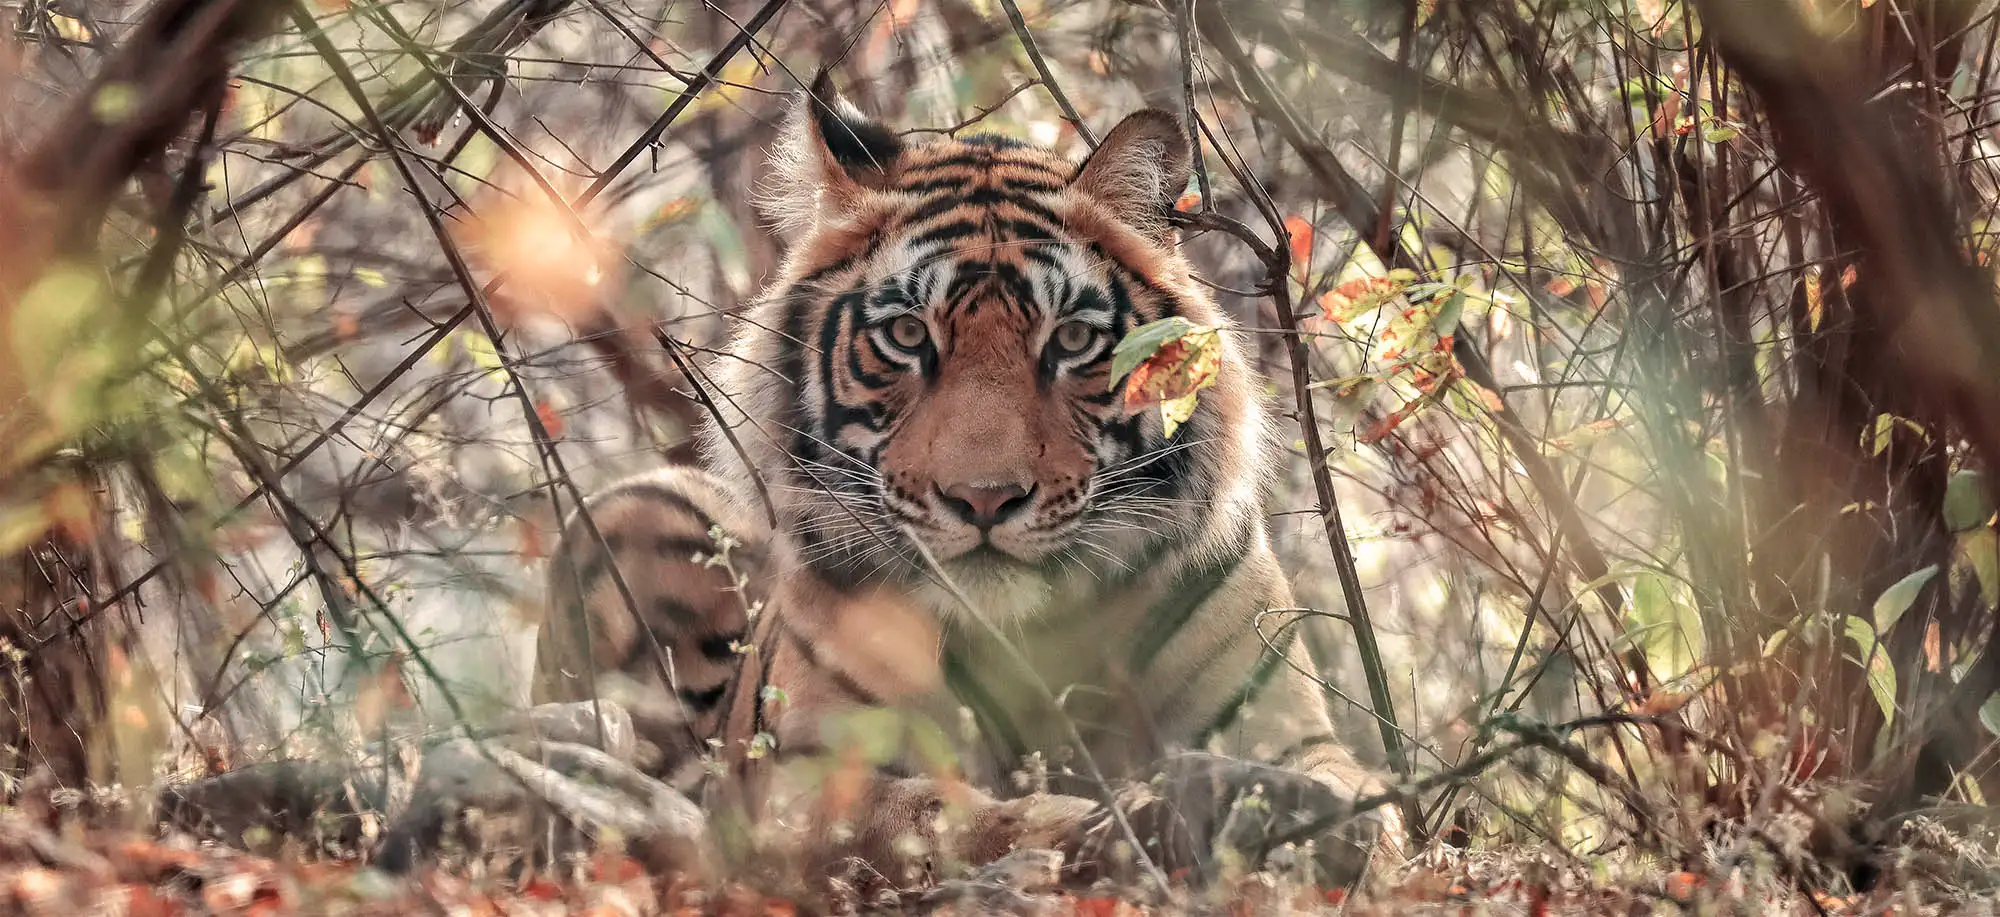  Tigres de Bengala